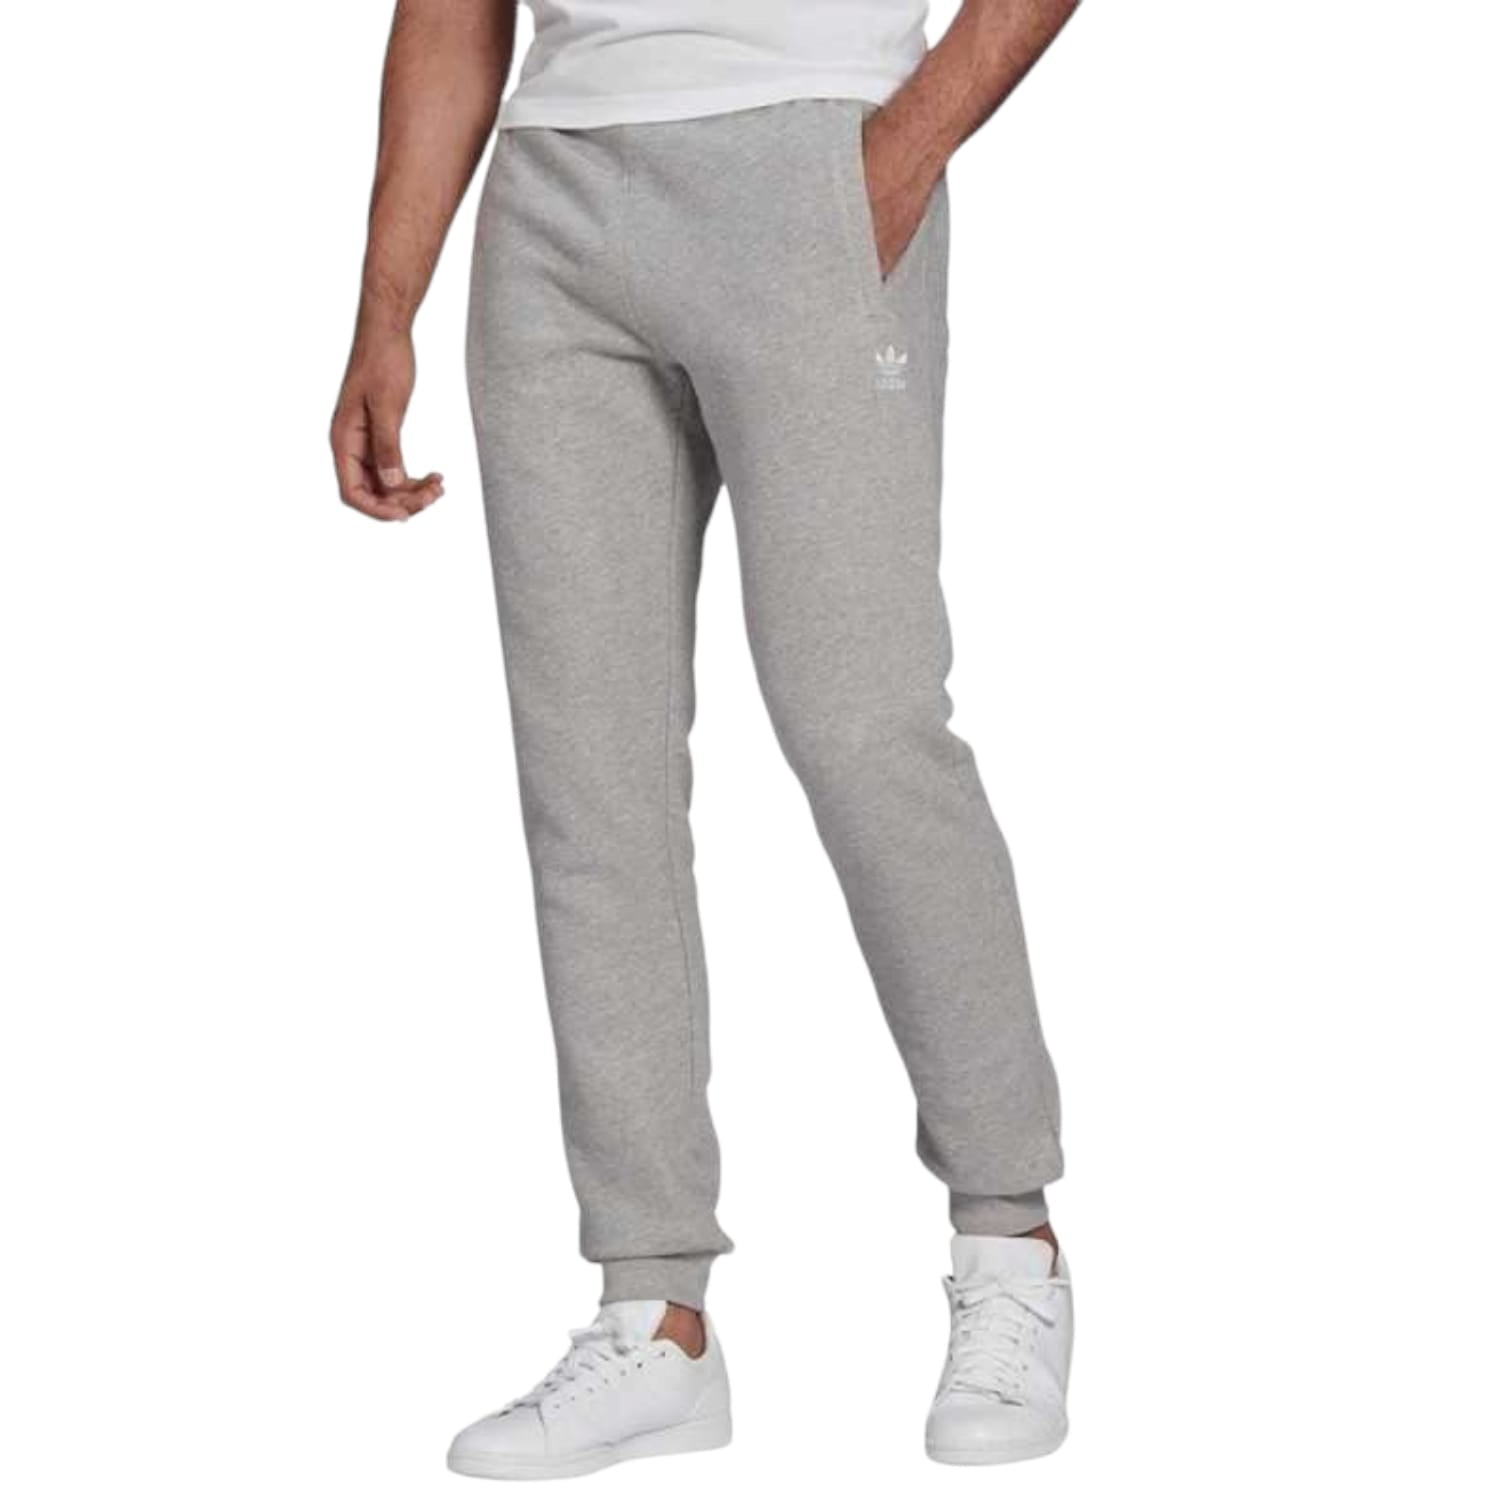 Adidas Pantalone tuta Essentials Uomo